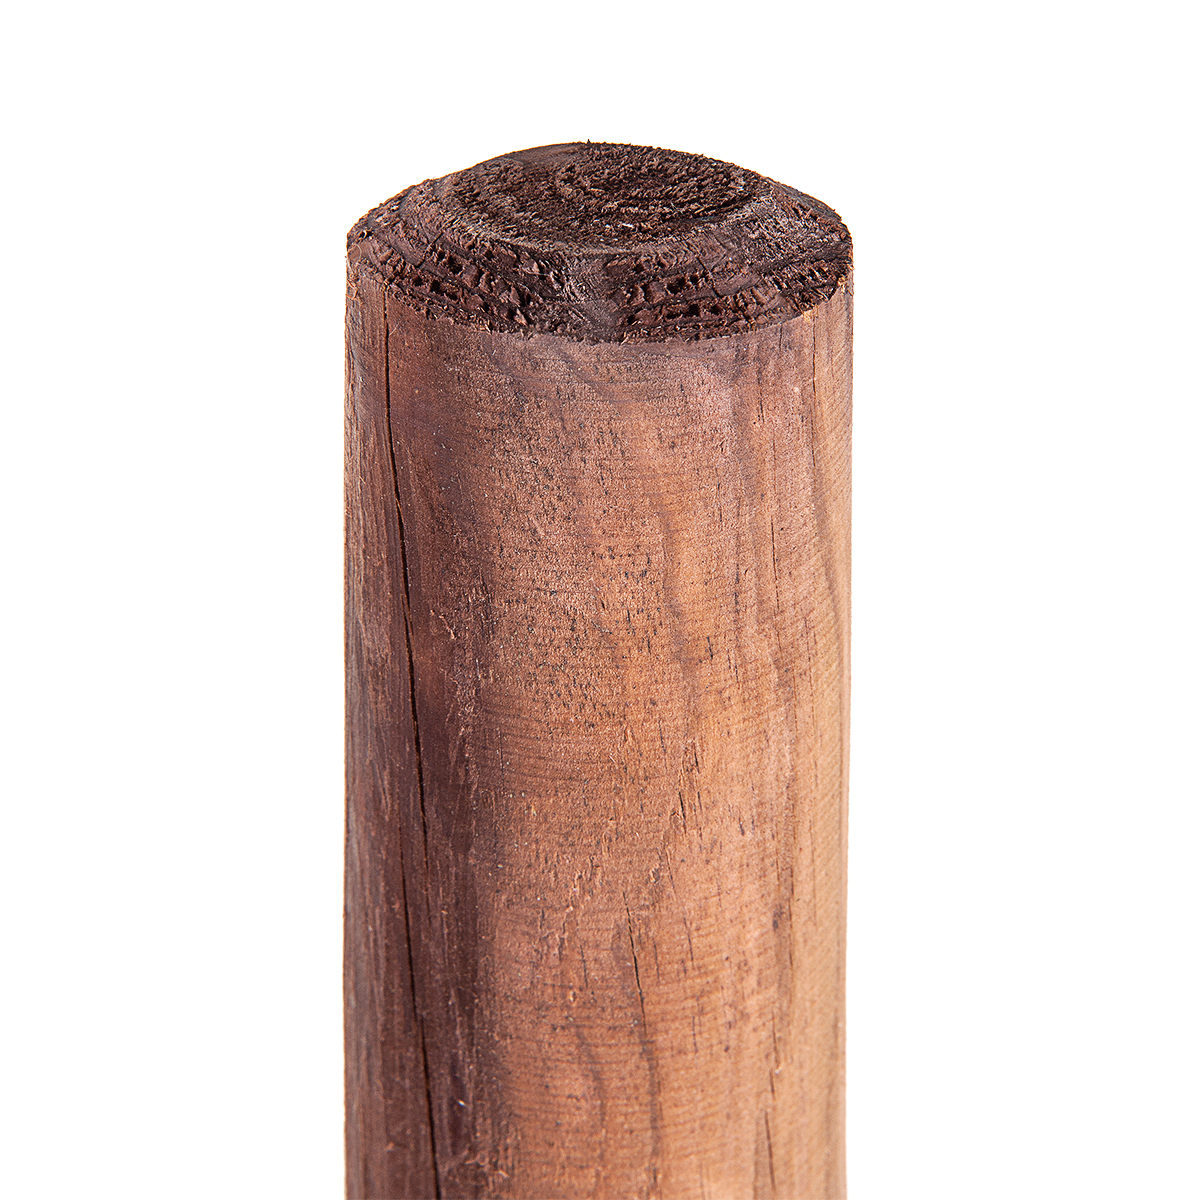 1 pz. Palina di legno 8cmØ x 100cm di altezza Paletto di legno Paletto di legno per recinzione